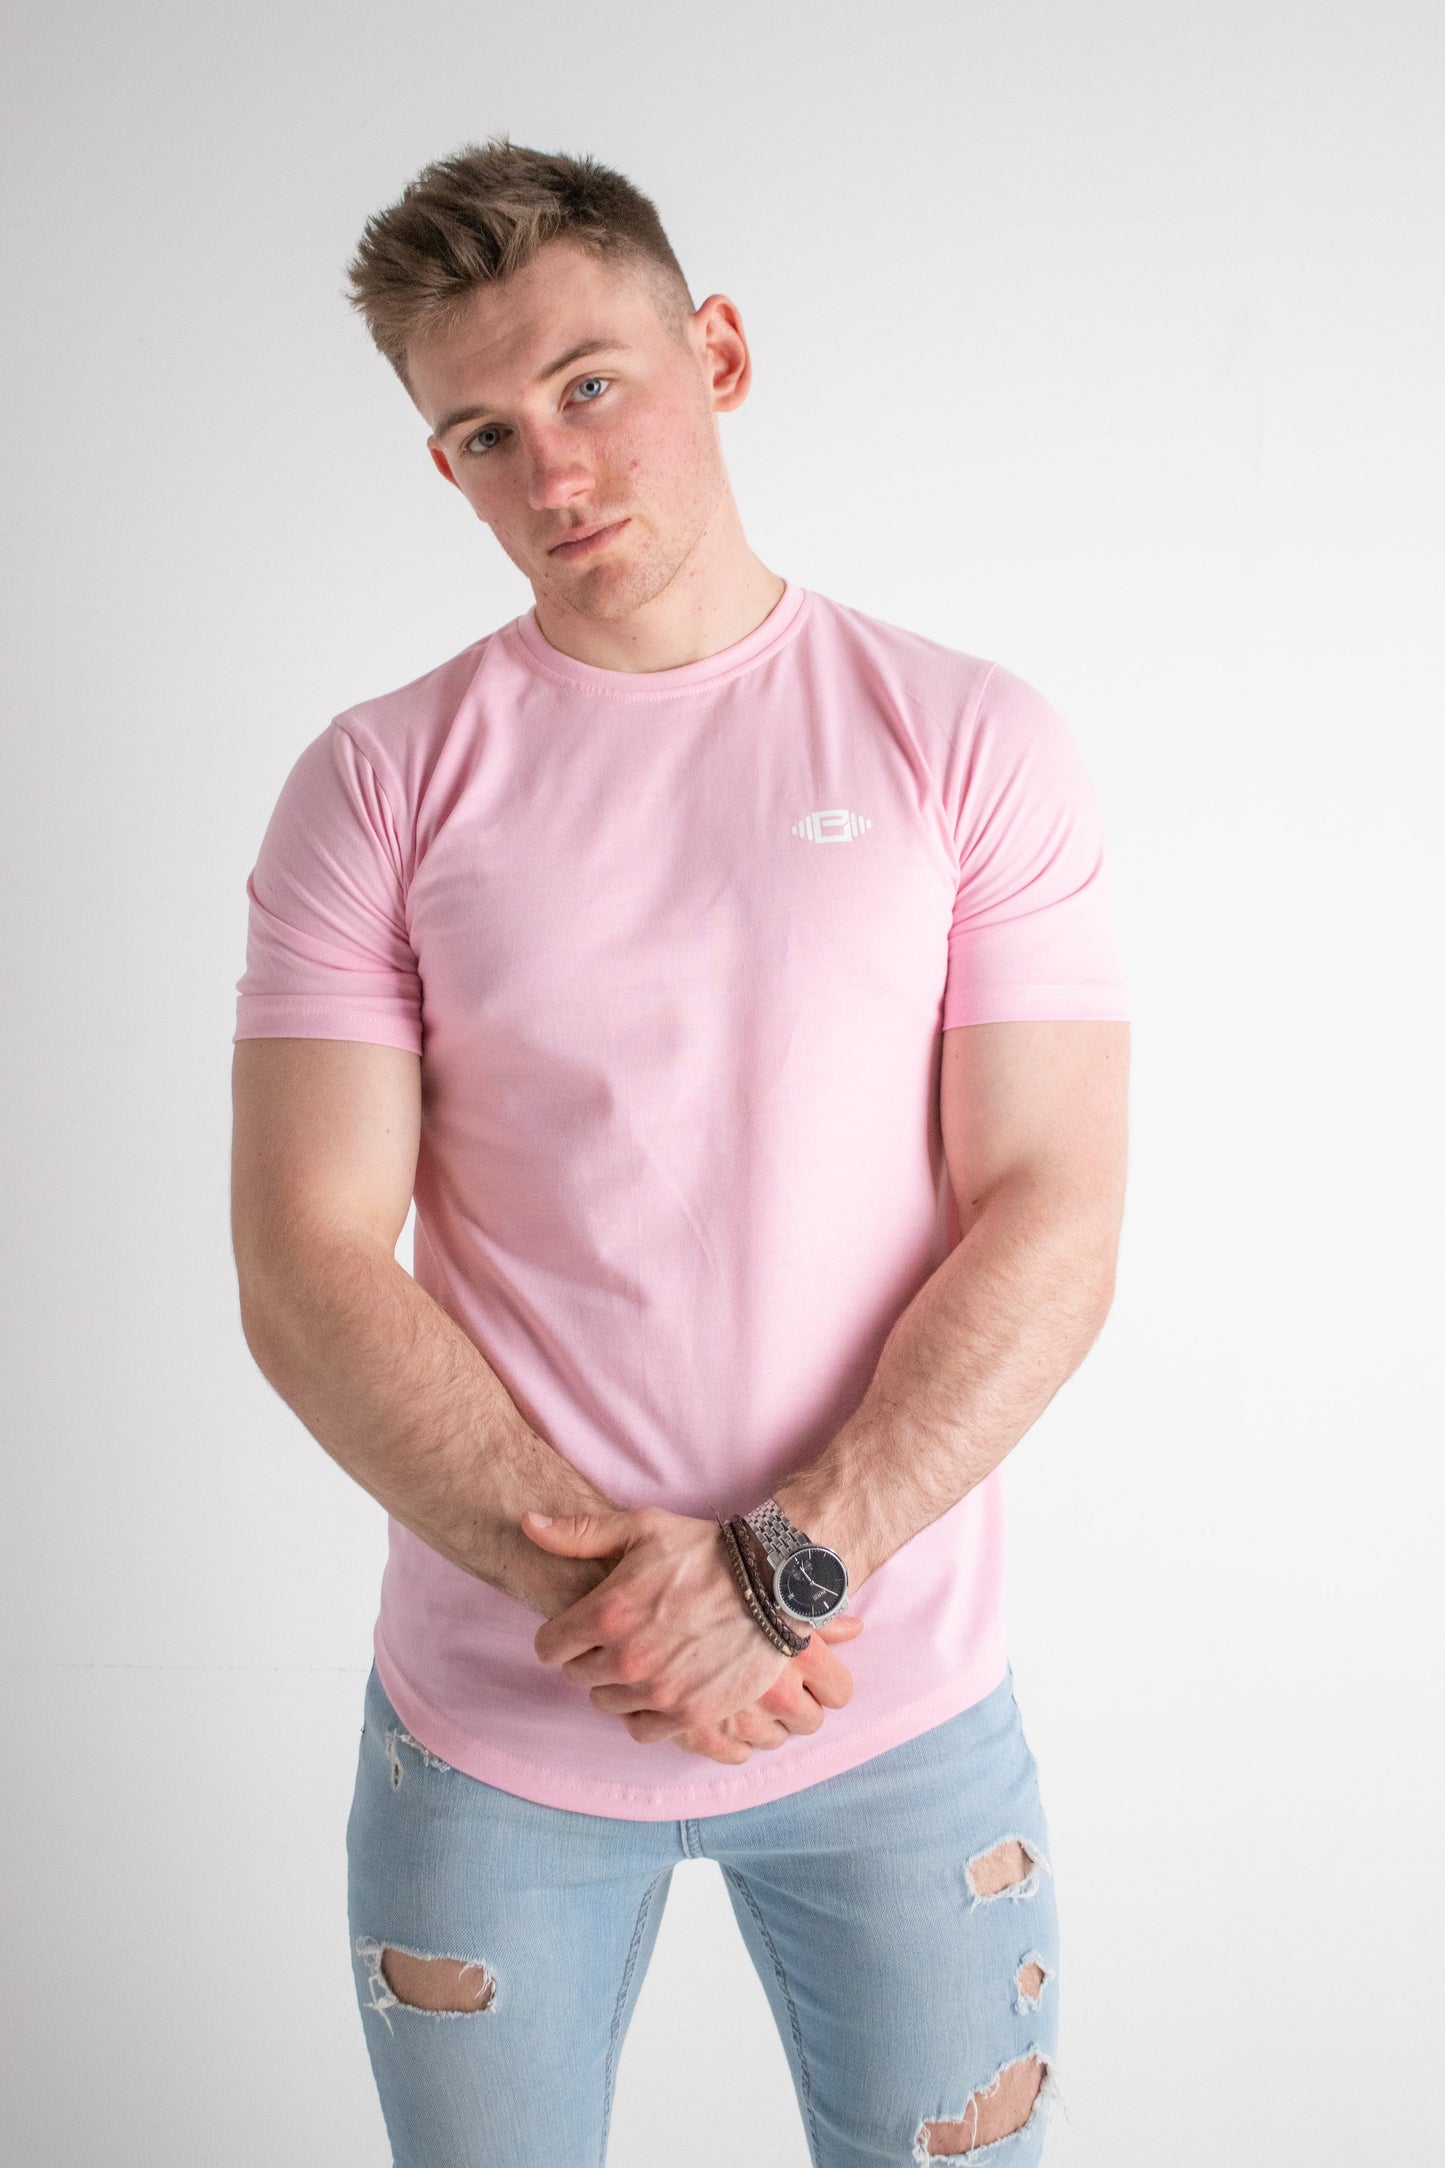 Buzz Physique Manhattan T-Shirt - Pink - Premium  from Buzz Physique - Just $10! Shop now at Buzz Physique